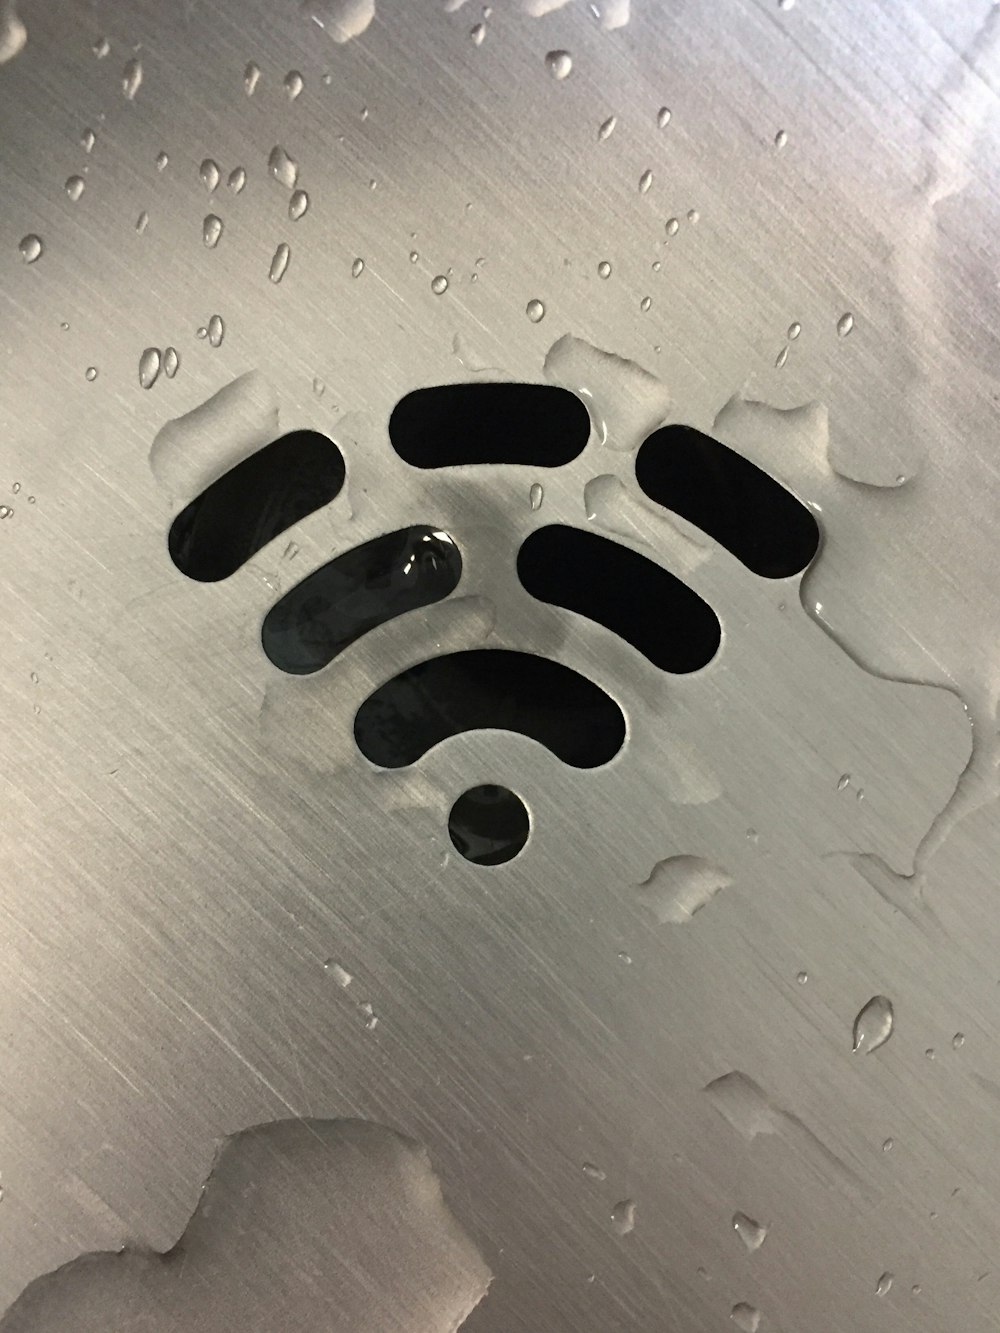 wifi signal on metallic panel